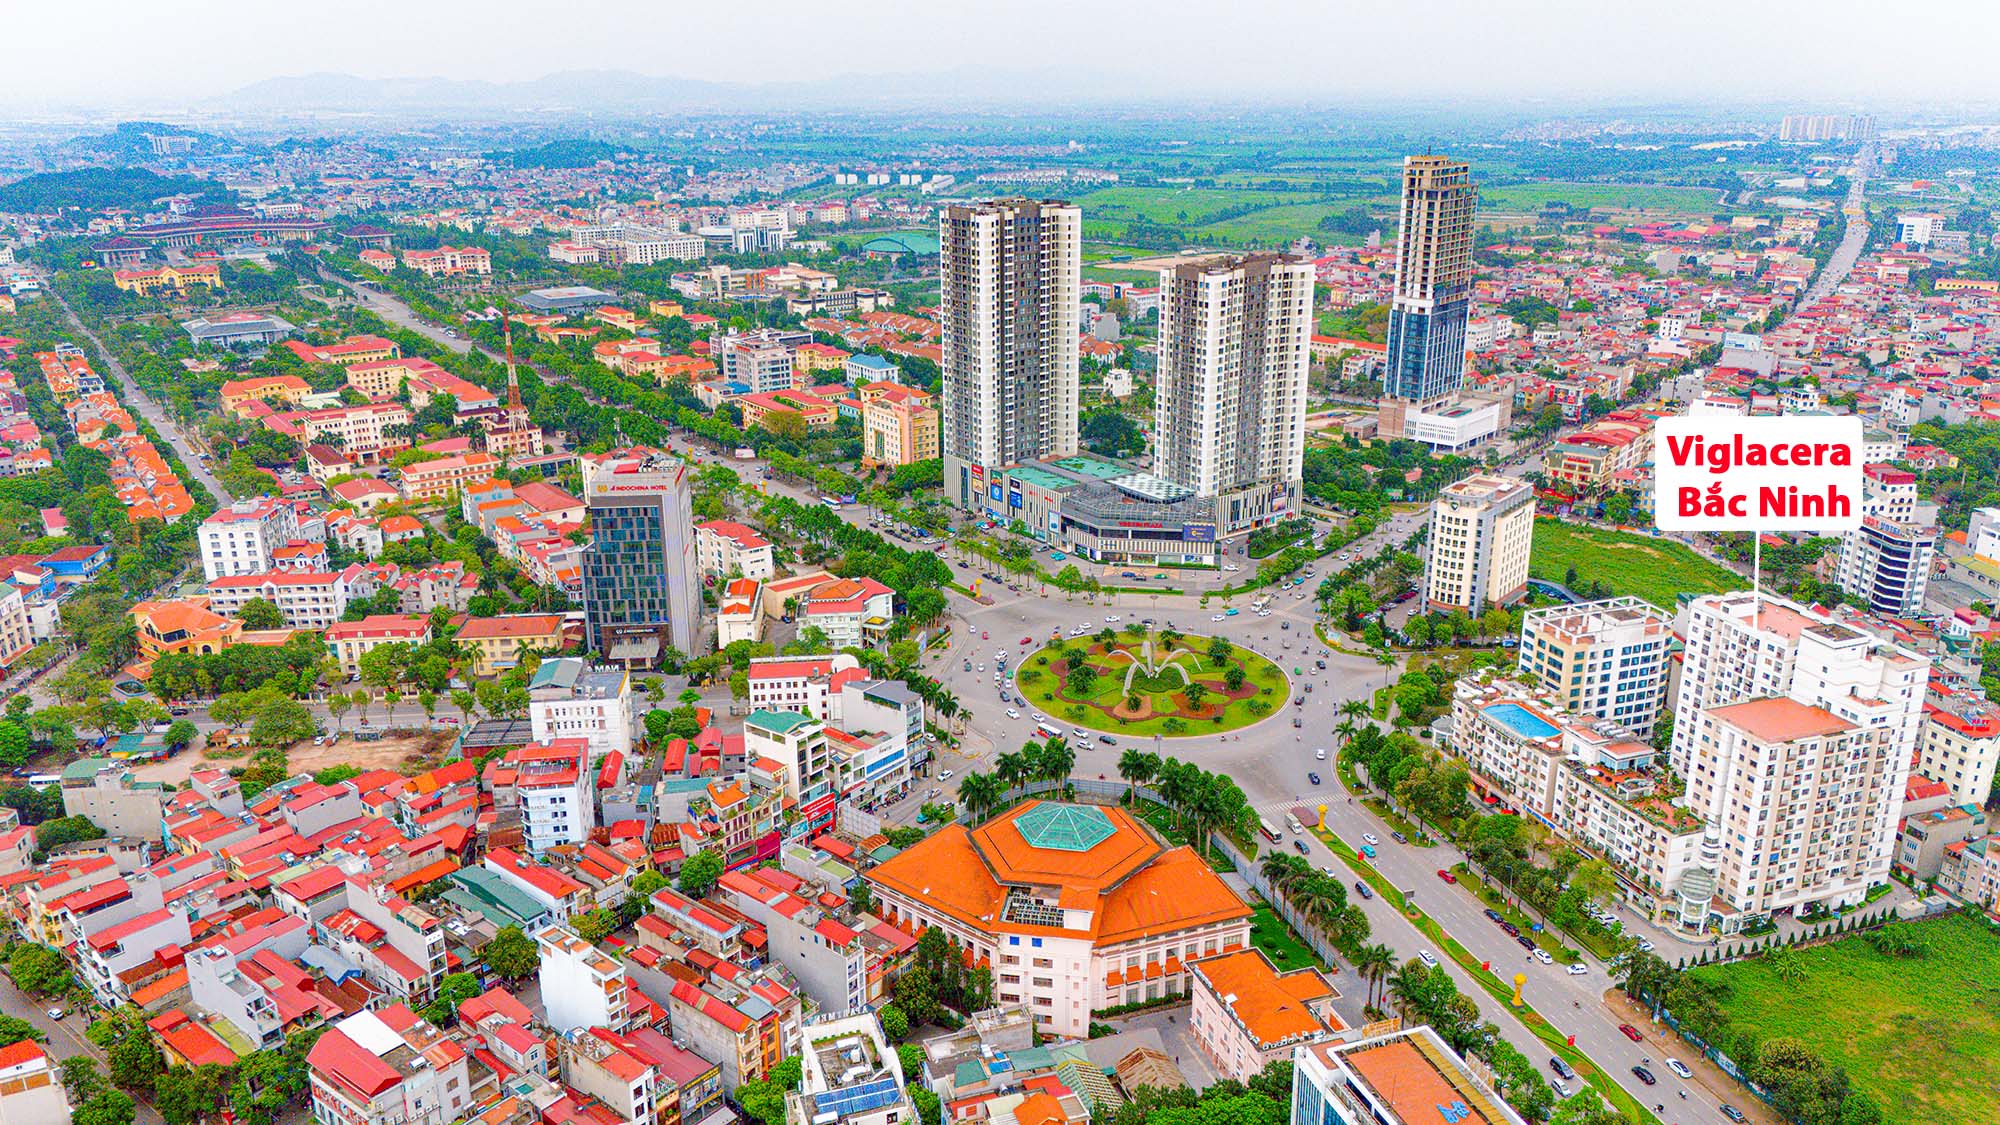 Khu vực trung tâm của trung tâm tỉnh sắp lên thành phố: Có khu hành chính độc đáo bậc nhất Việt Nam; Vingroup, Vietcombank phô diễn vị thế- Ảnh 7.